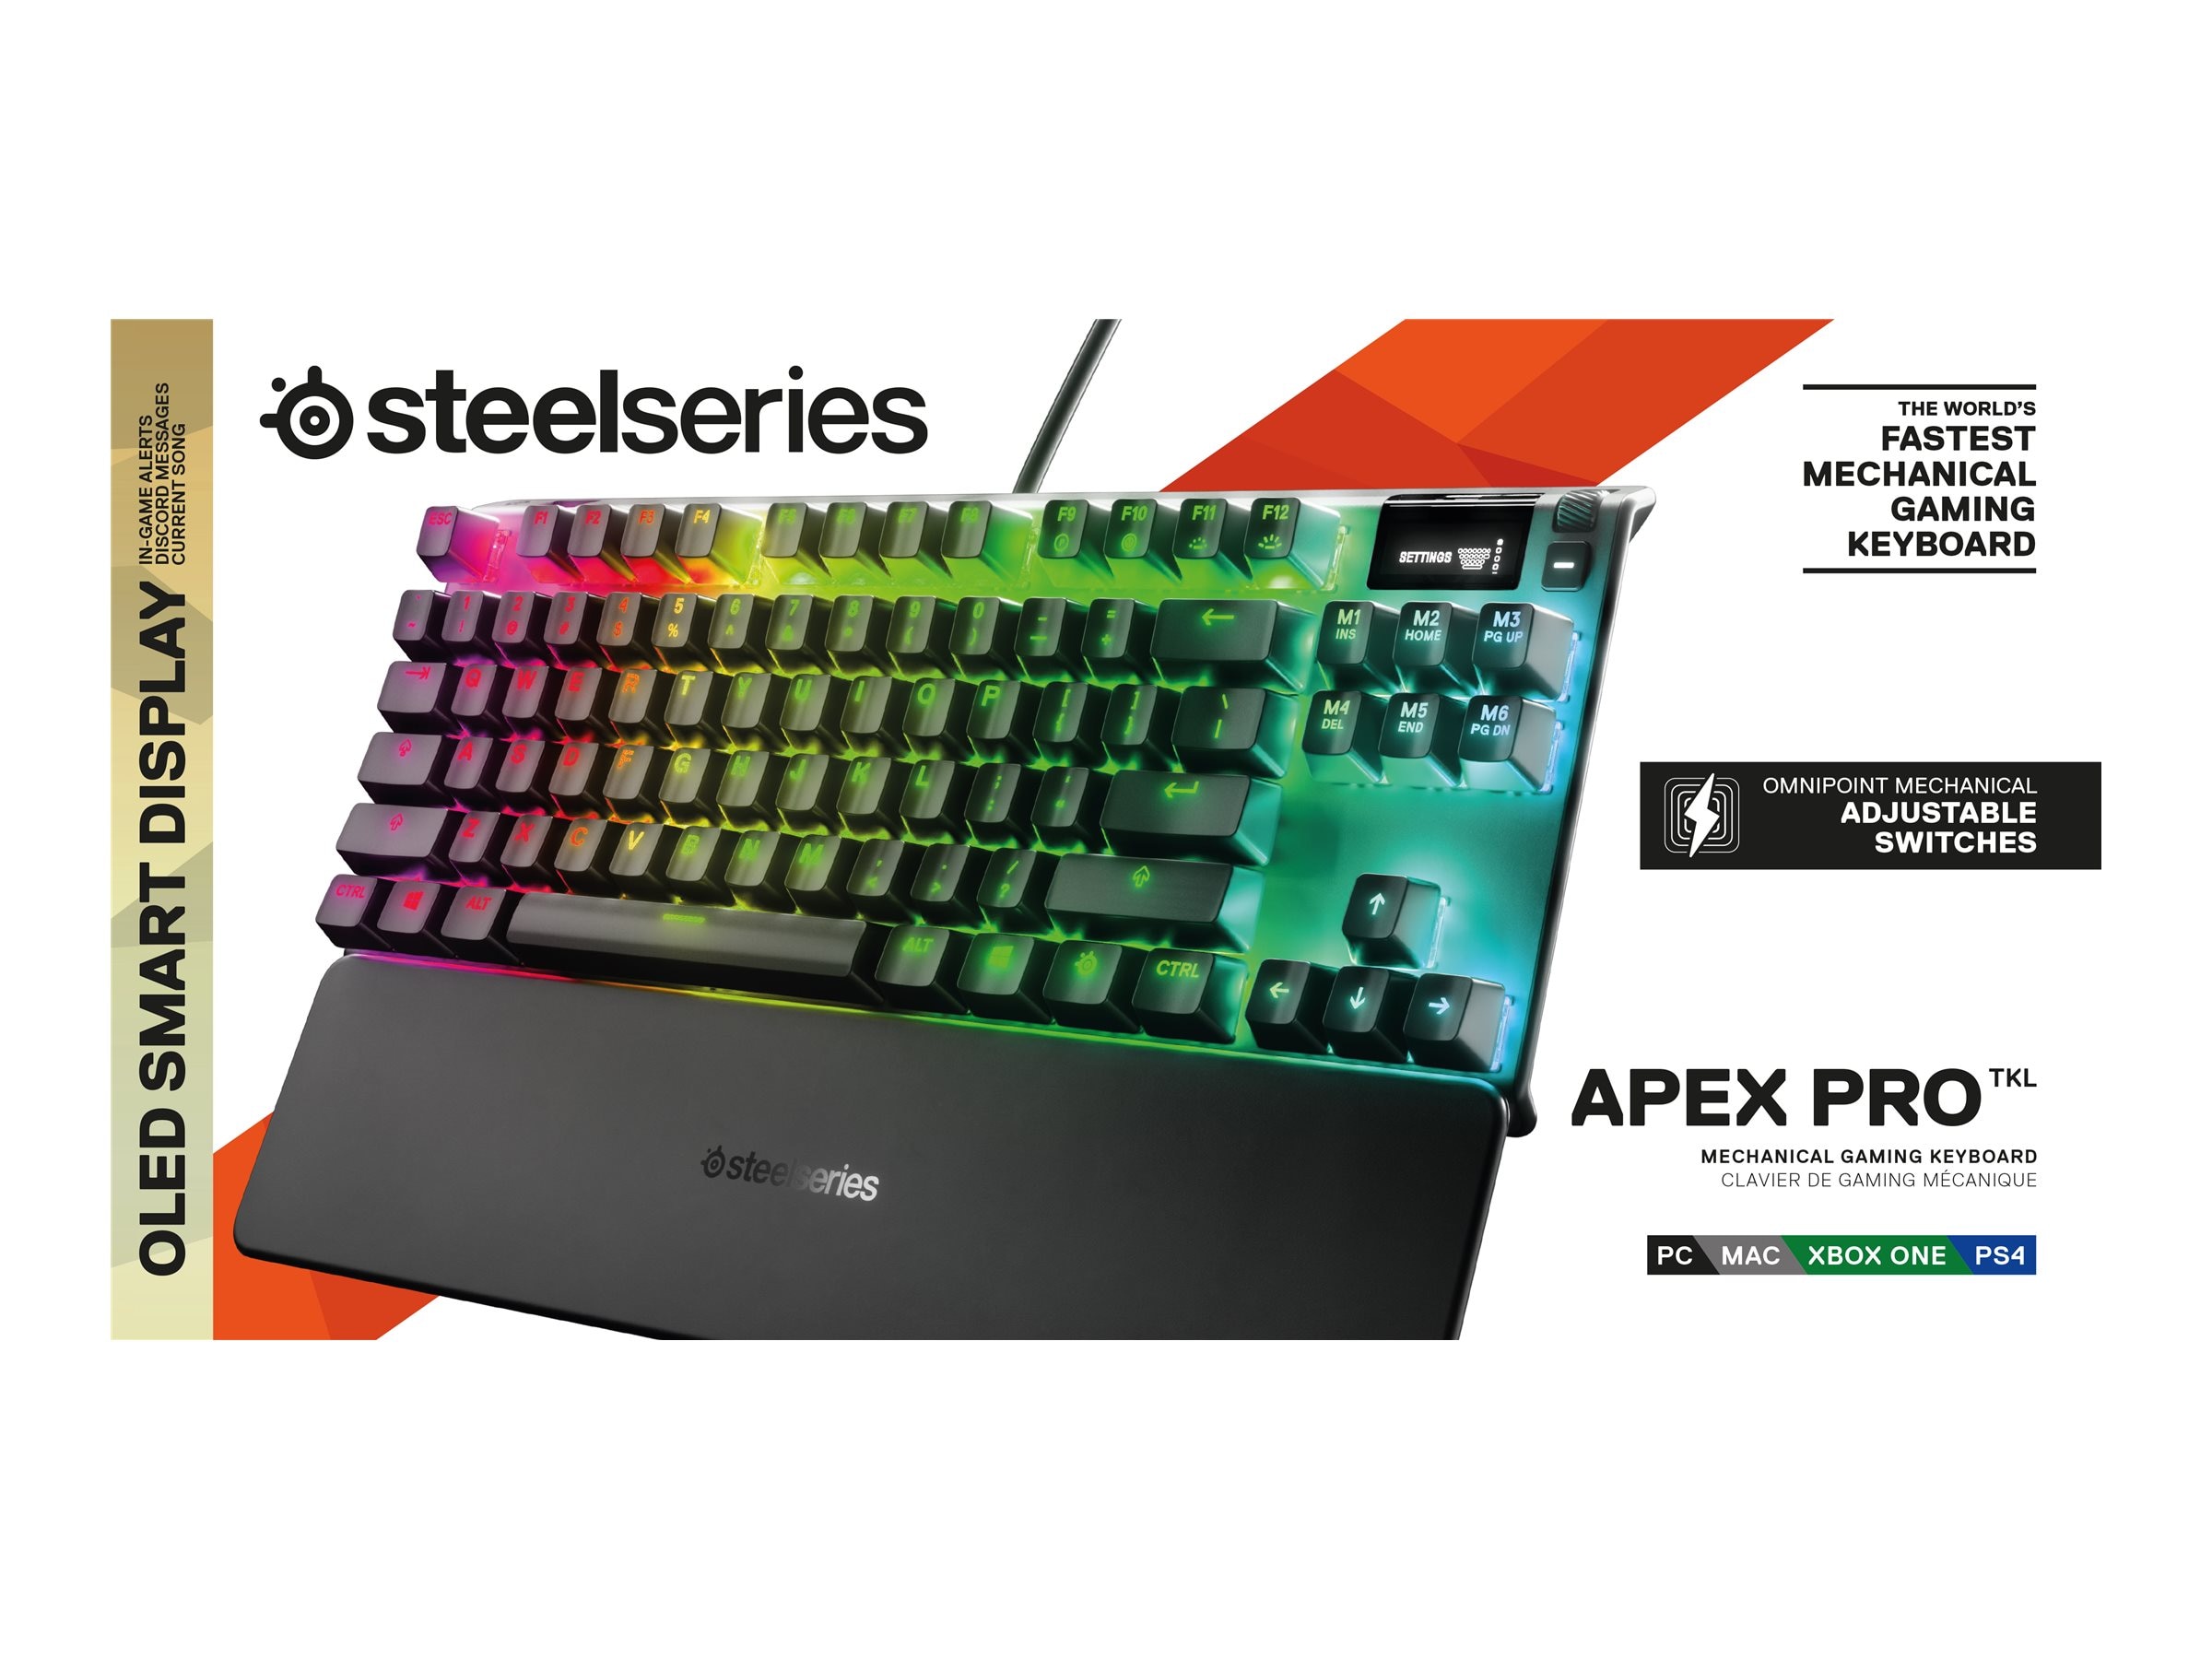 Steelseries Apex Pro TKL Mechanical Gaming Keyboard (64734)